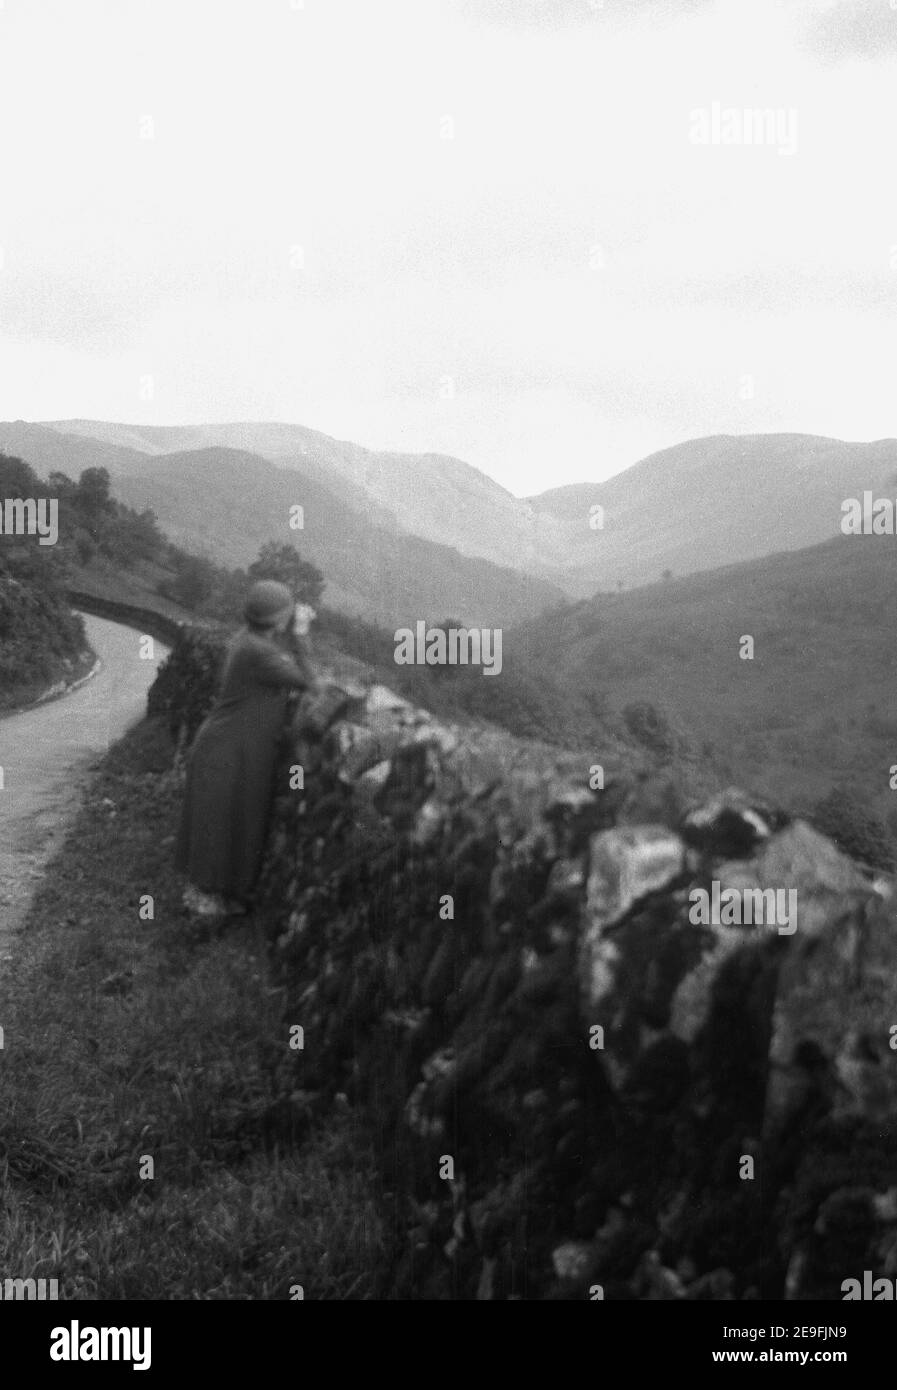 1930s, historisch, auf einem Grasrand, neben einer schmalen Landstraße auf einem Hügel, eine Dame mit Fernglas neben einer Wand, Blick über einen Valey, England, Großbritannien. Stockfoto